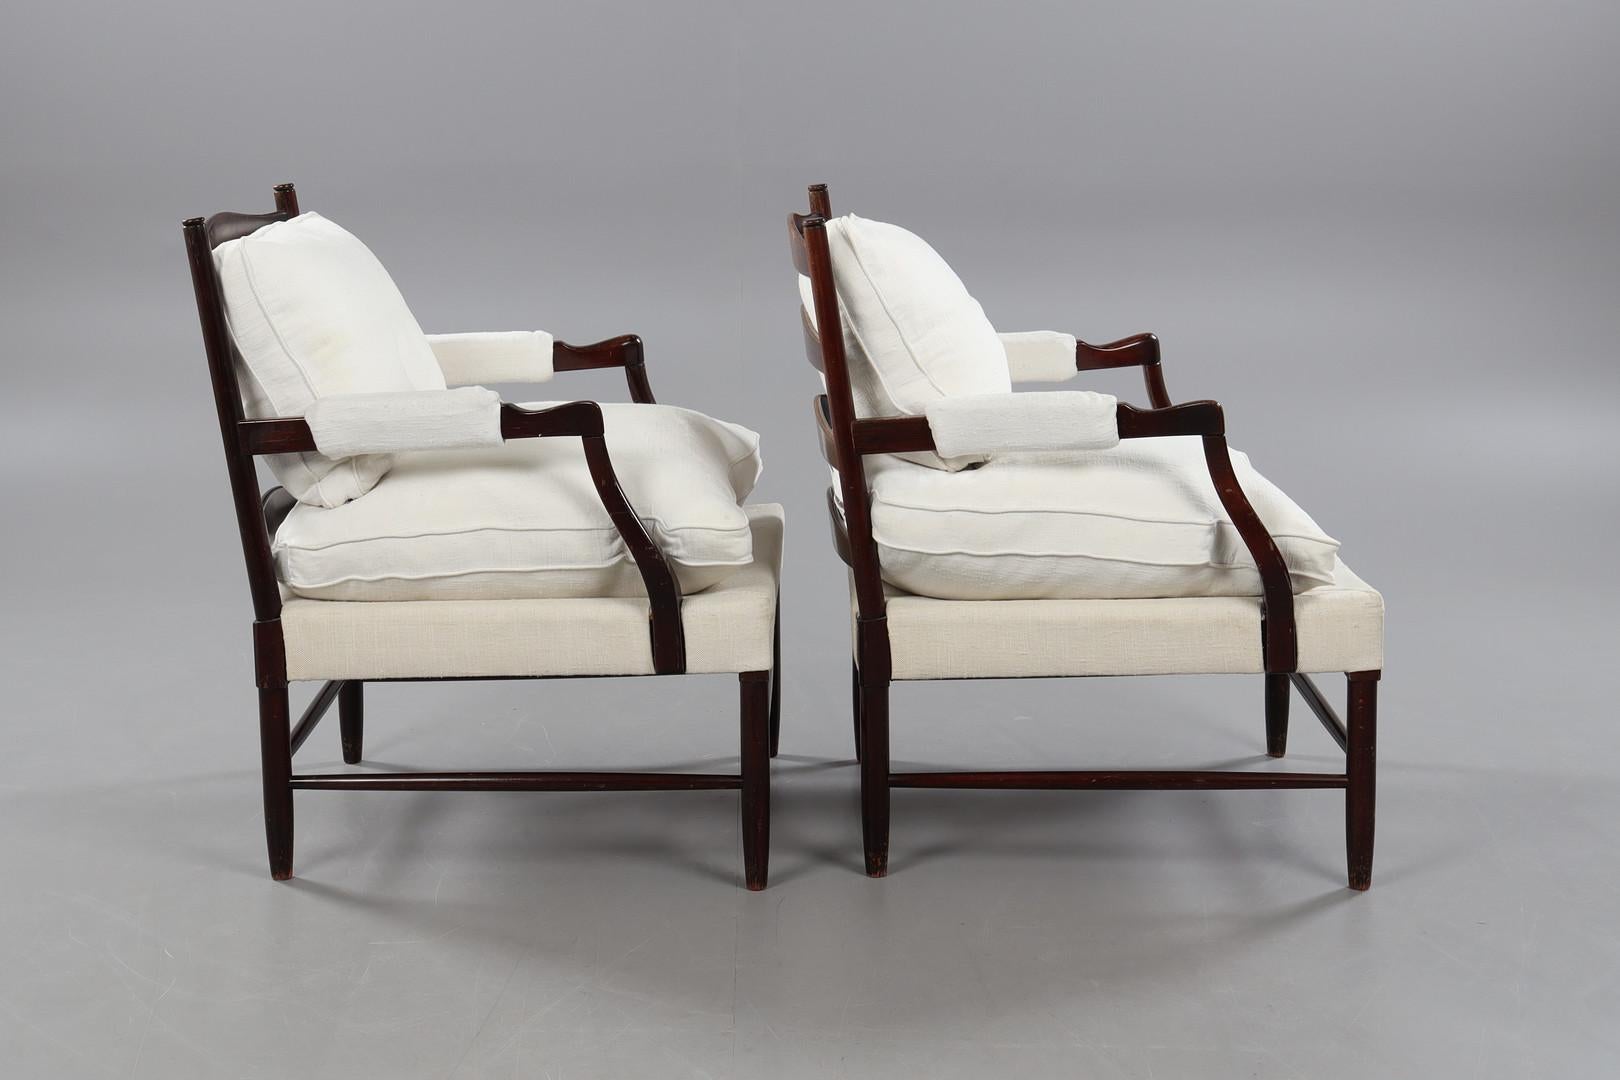 Die beiden Gripsholm-Sessel, entworfen von Arne Norell, sind wahre Schmuckstücke der Eleganz und Funktionalität des skandinavischen Designs. Die aus Buchenholz gefertigten Sessel verkörpern die für nordische Möbel charakteristische Schlichtheit und